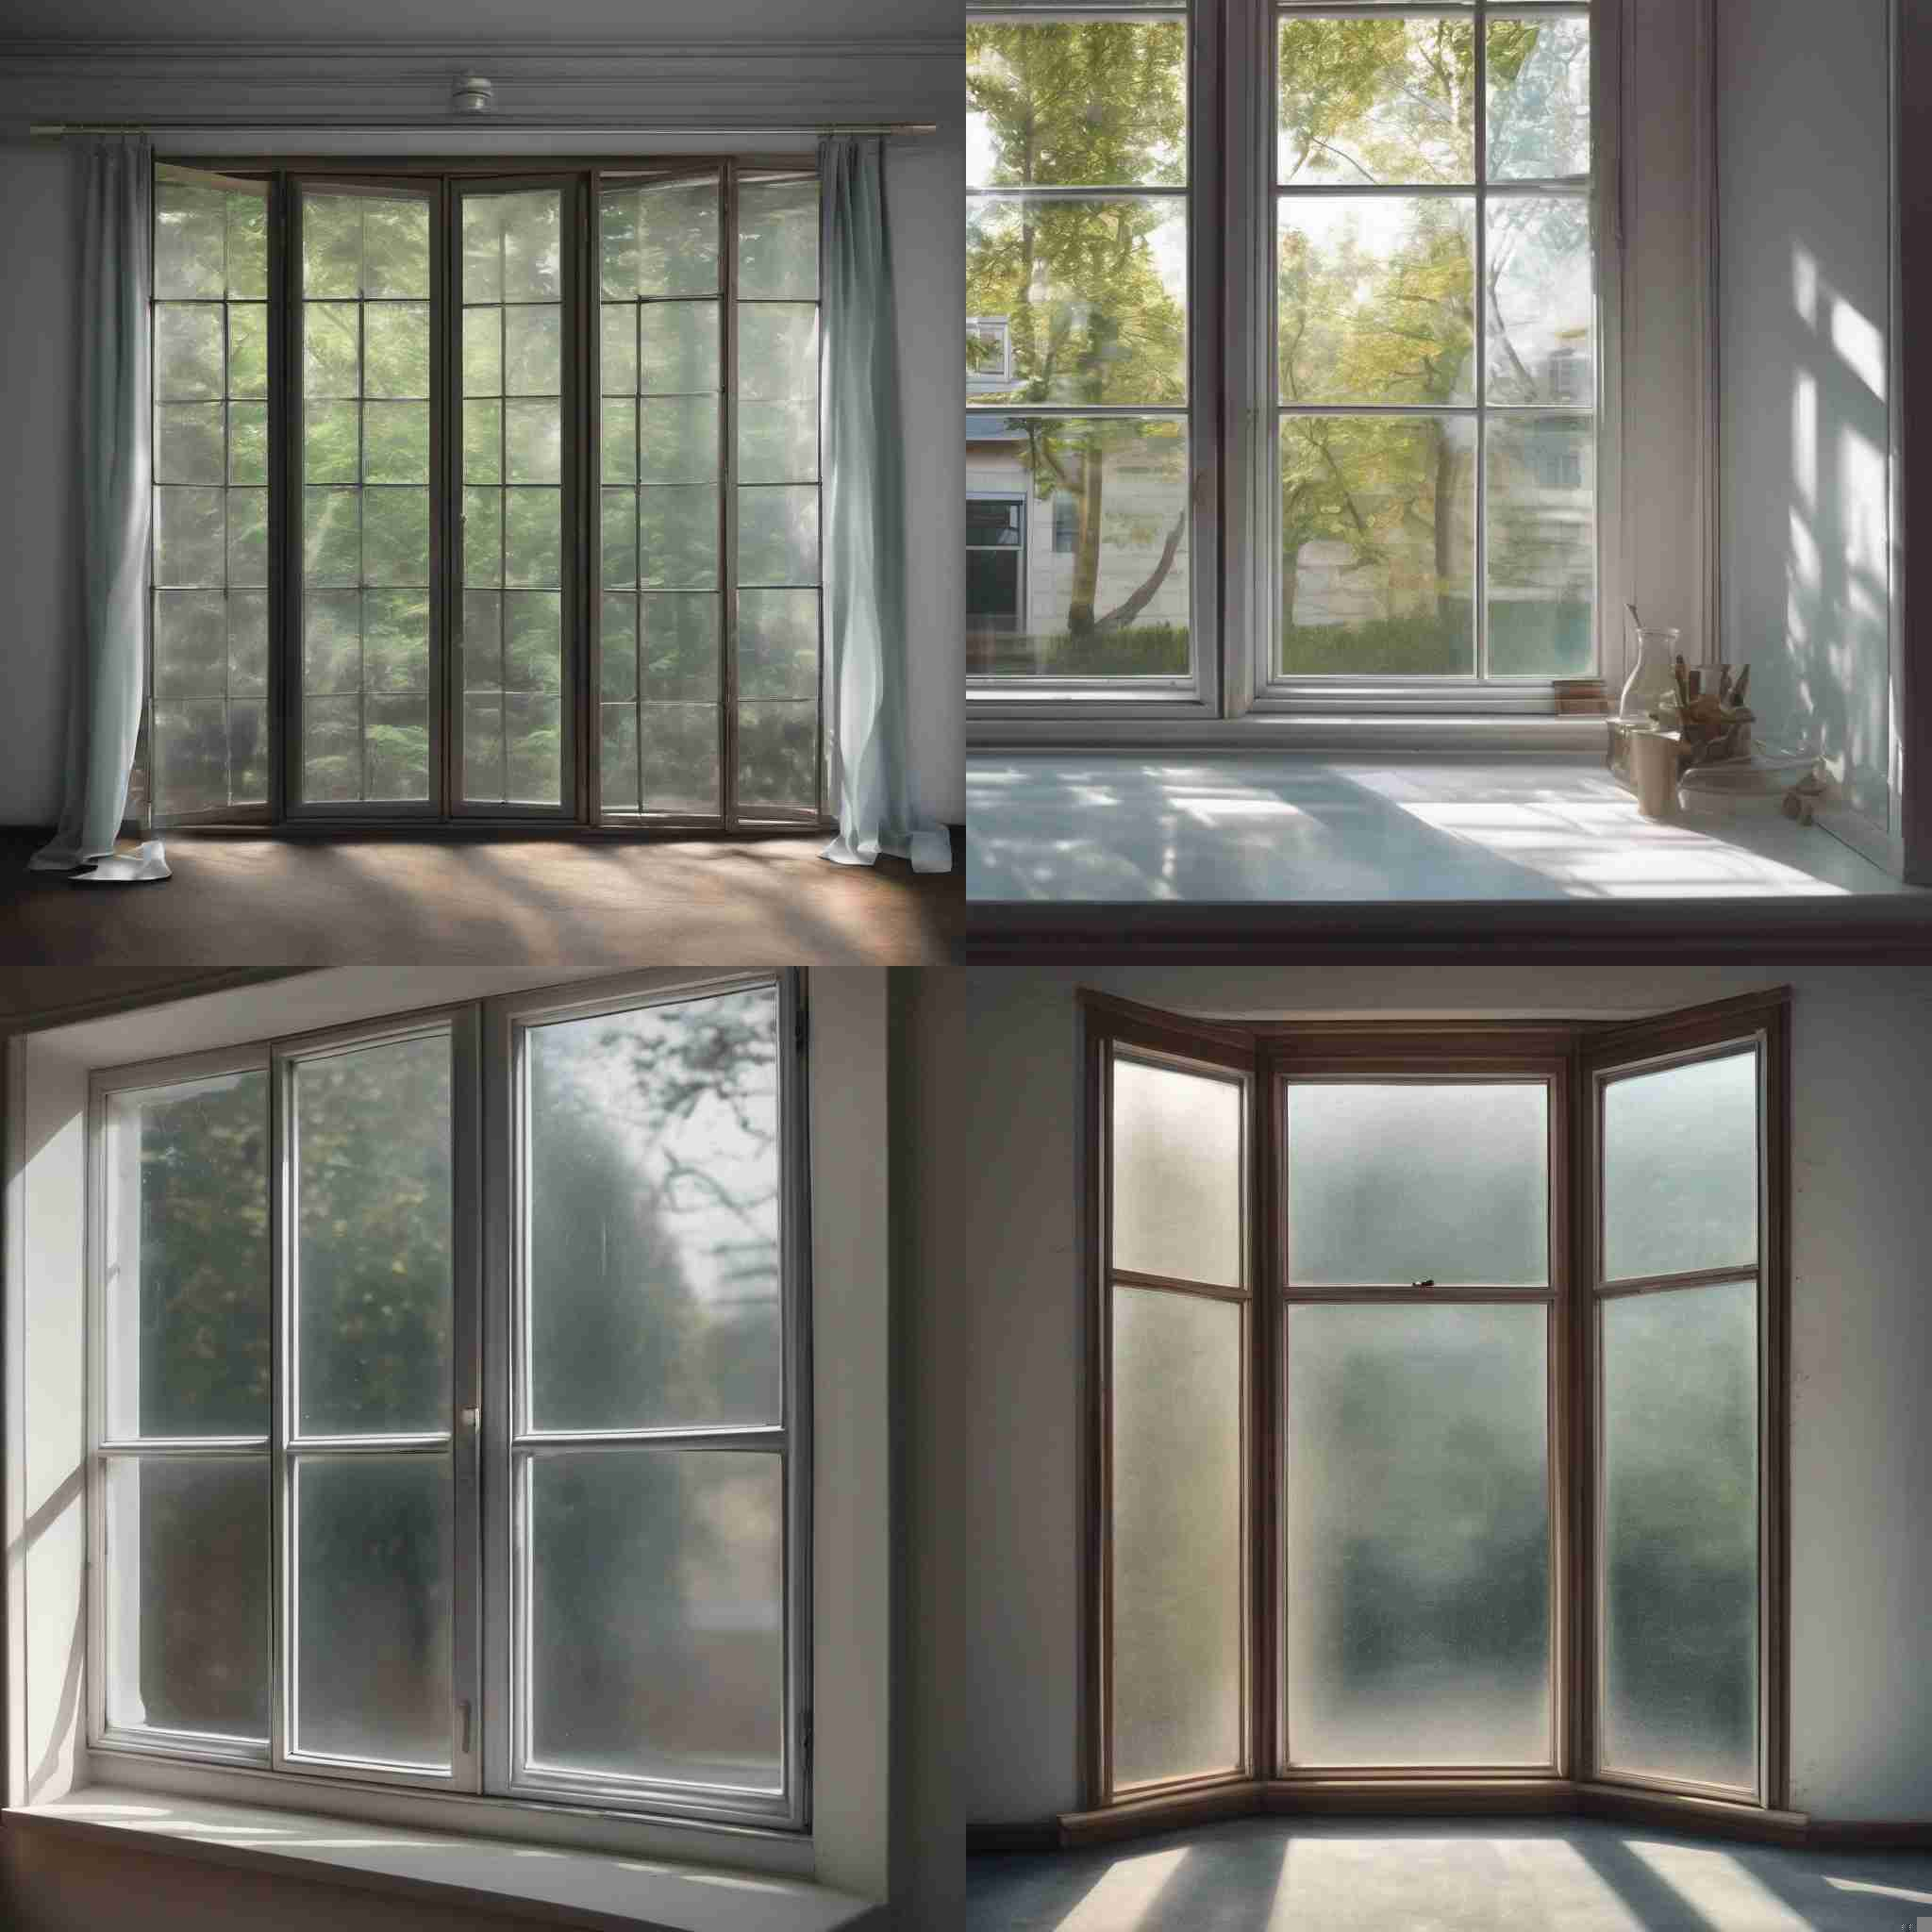 A glass window